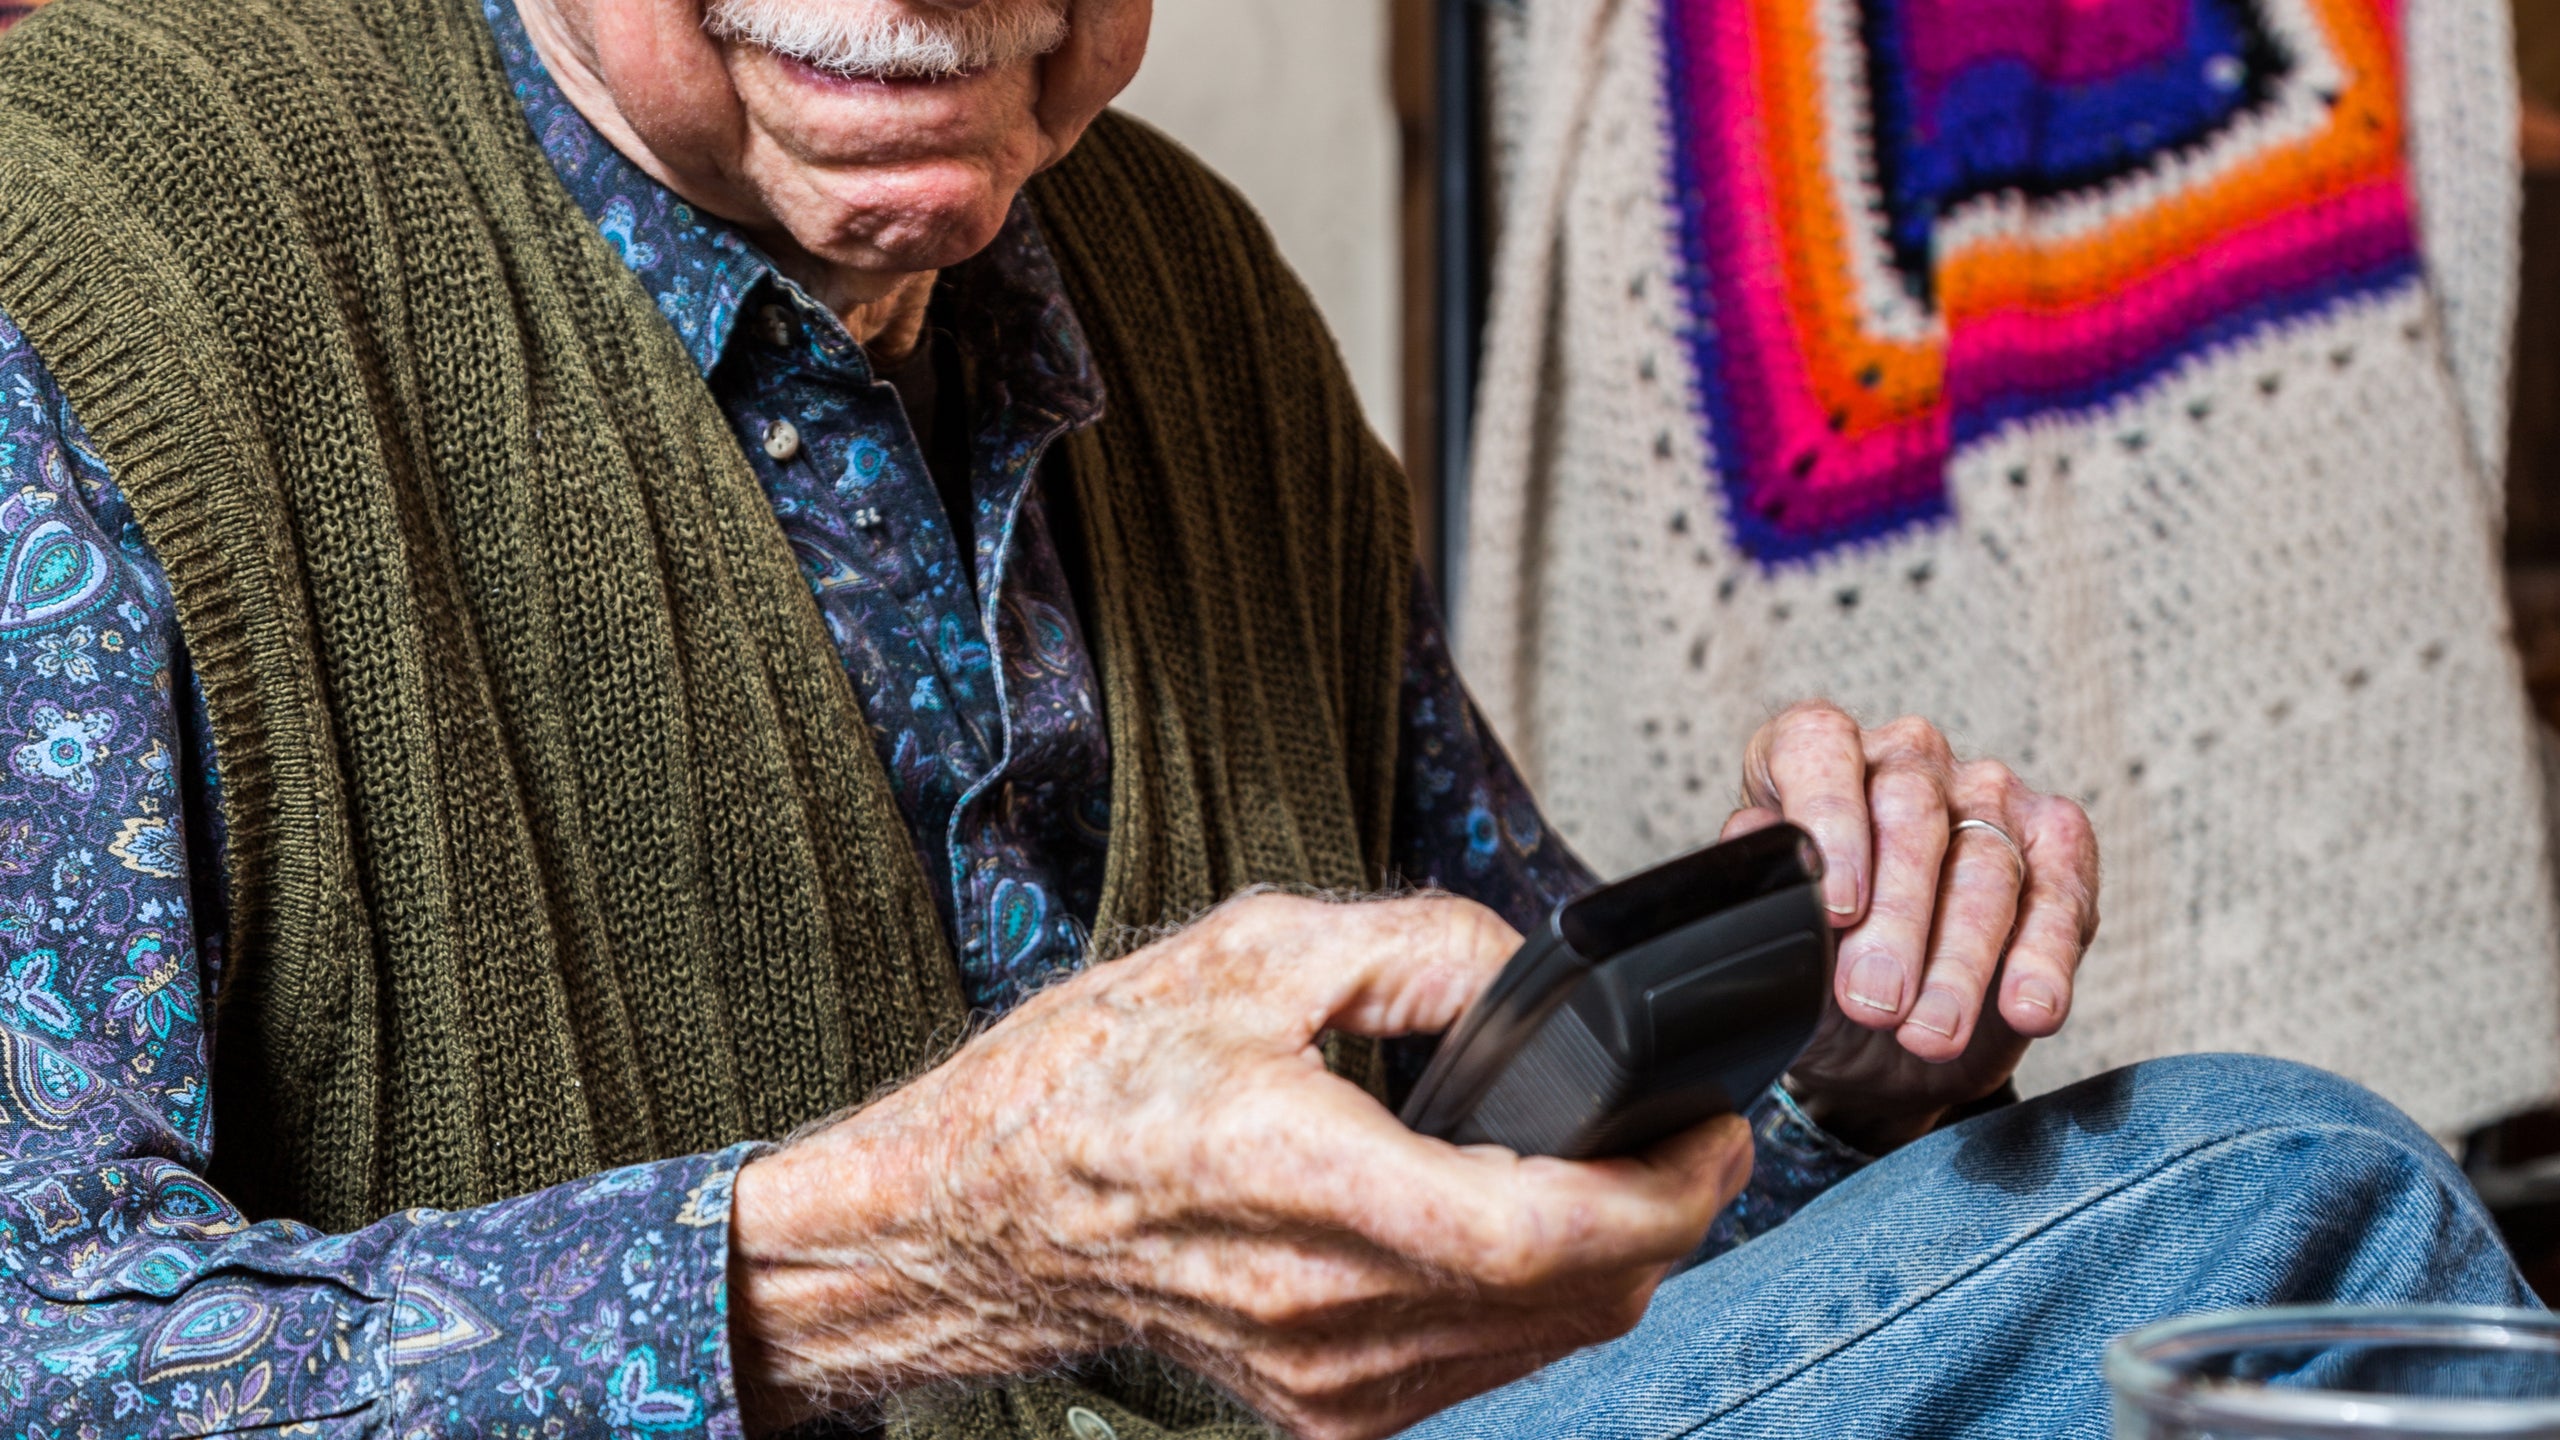 Take a Photo of Grandpa’s Remote When You Visit